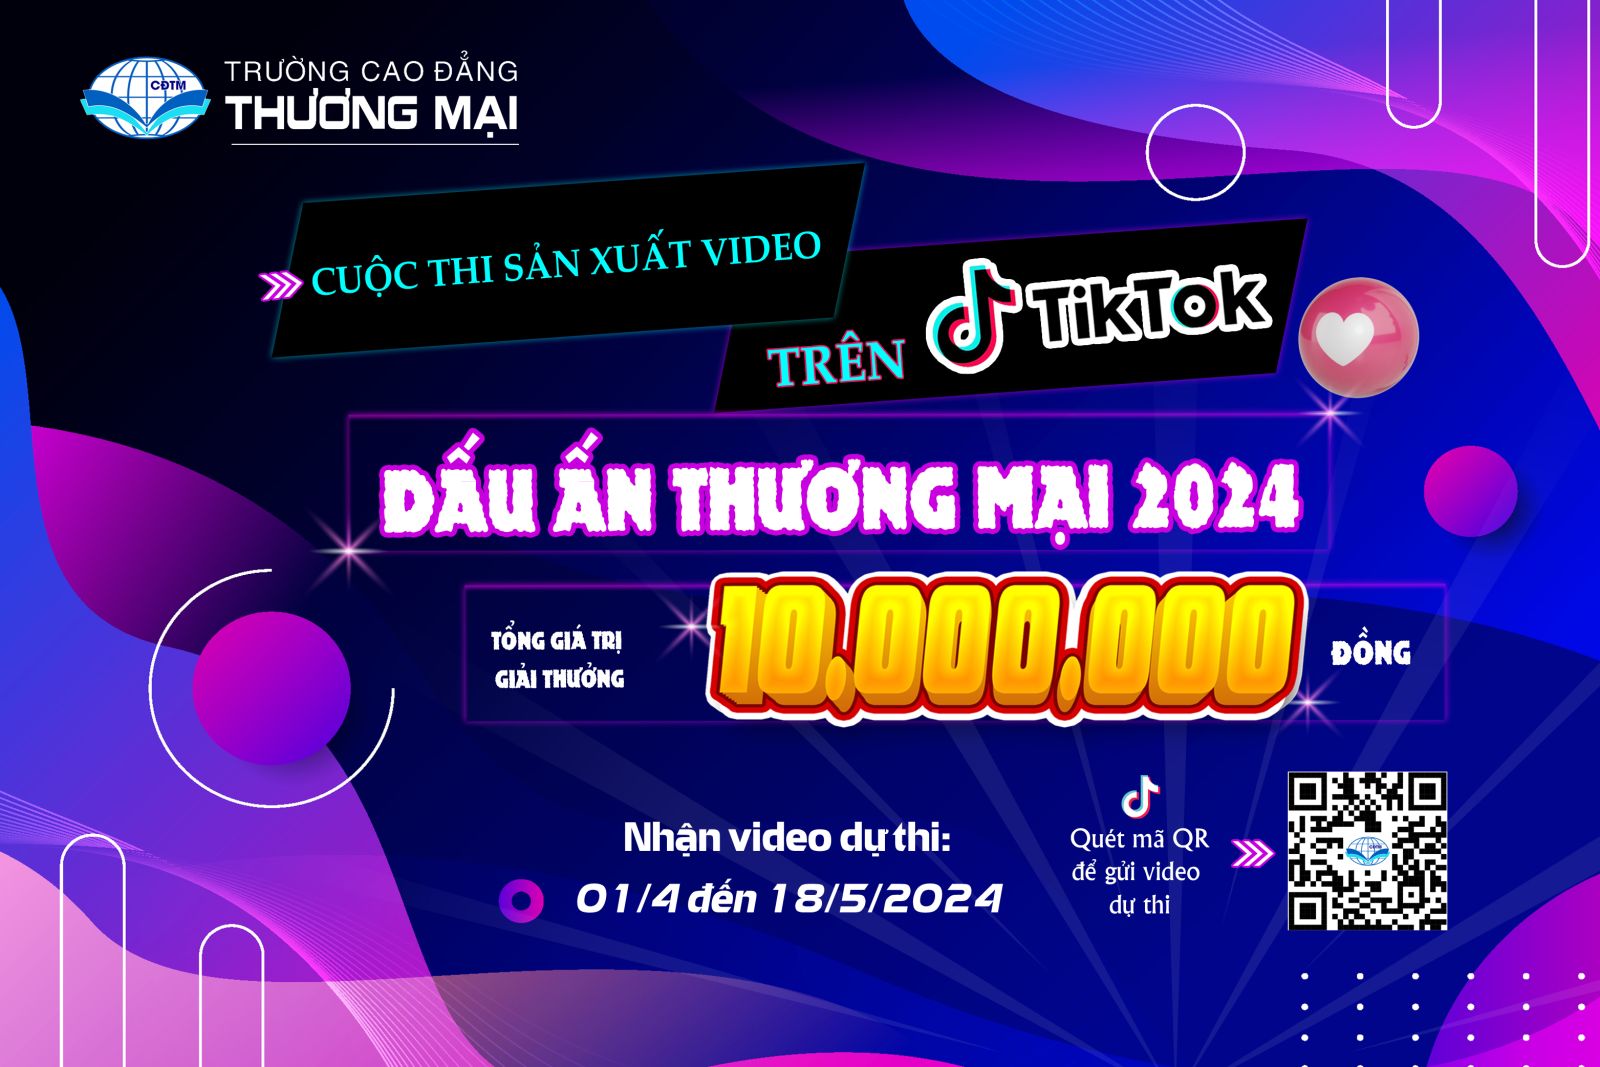 Phát động cuộc thi sản xuất video Tiktok “Dấu ấn Thương mại 2024”